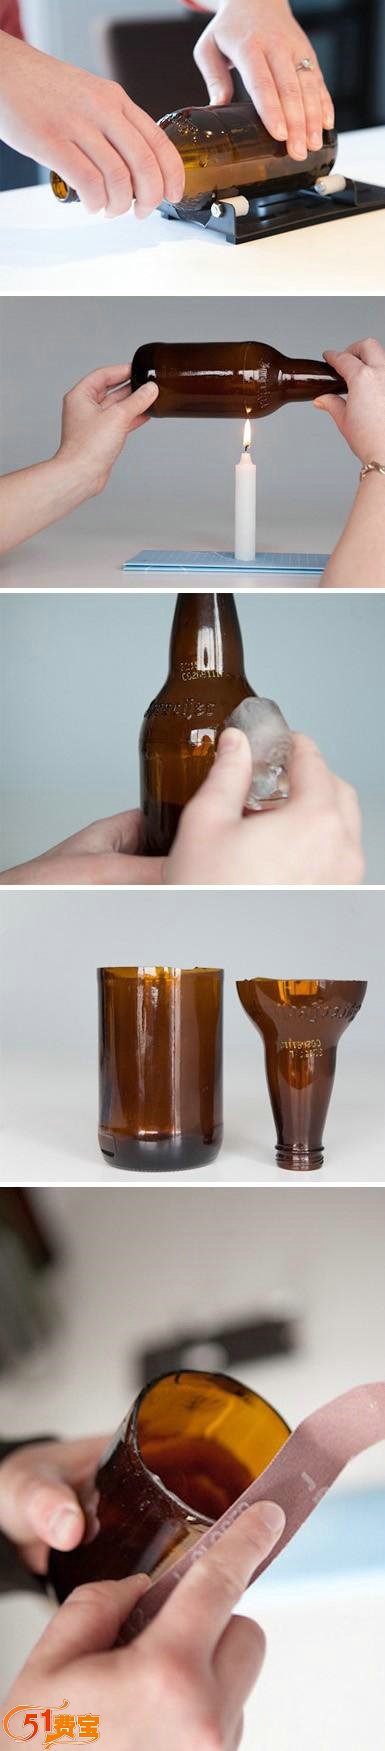 利用家庭废旧酒瓶和汽水瓶制作实用花瓶